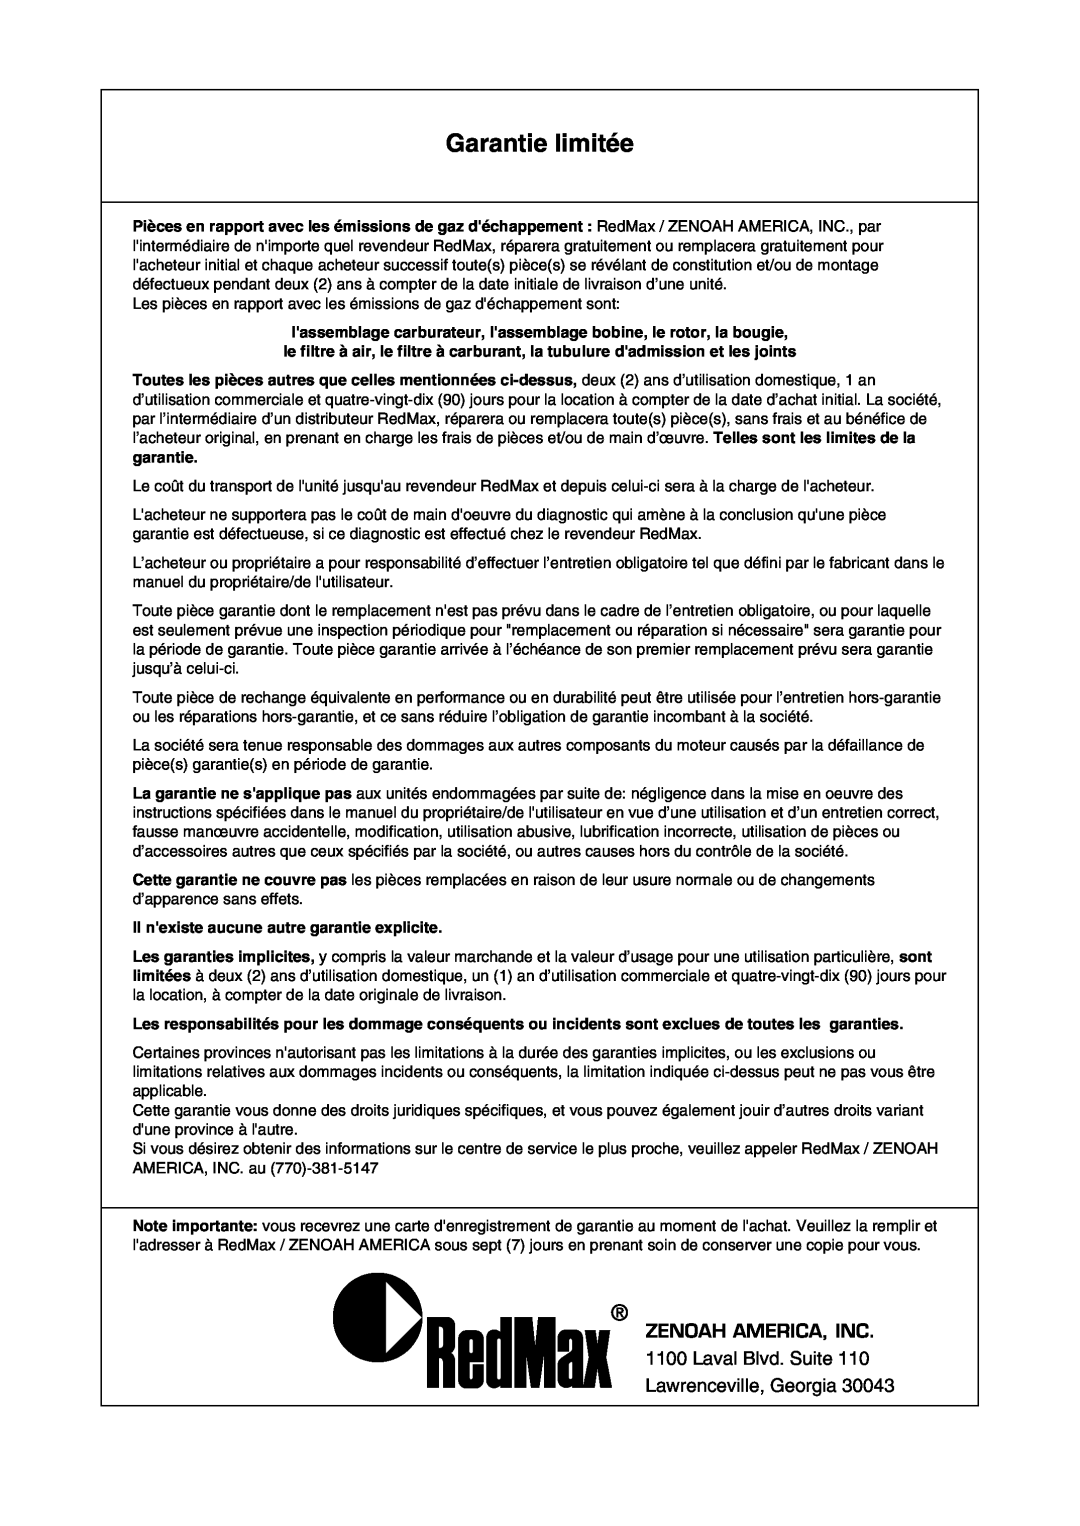 Zenoah TR2301S manual Garantie limitée, Zenoah America, Inc, Il nexiste aucune autre garantie explicite 